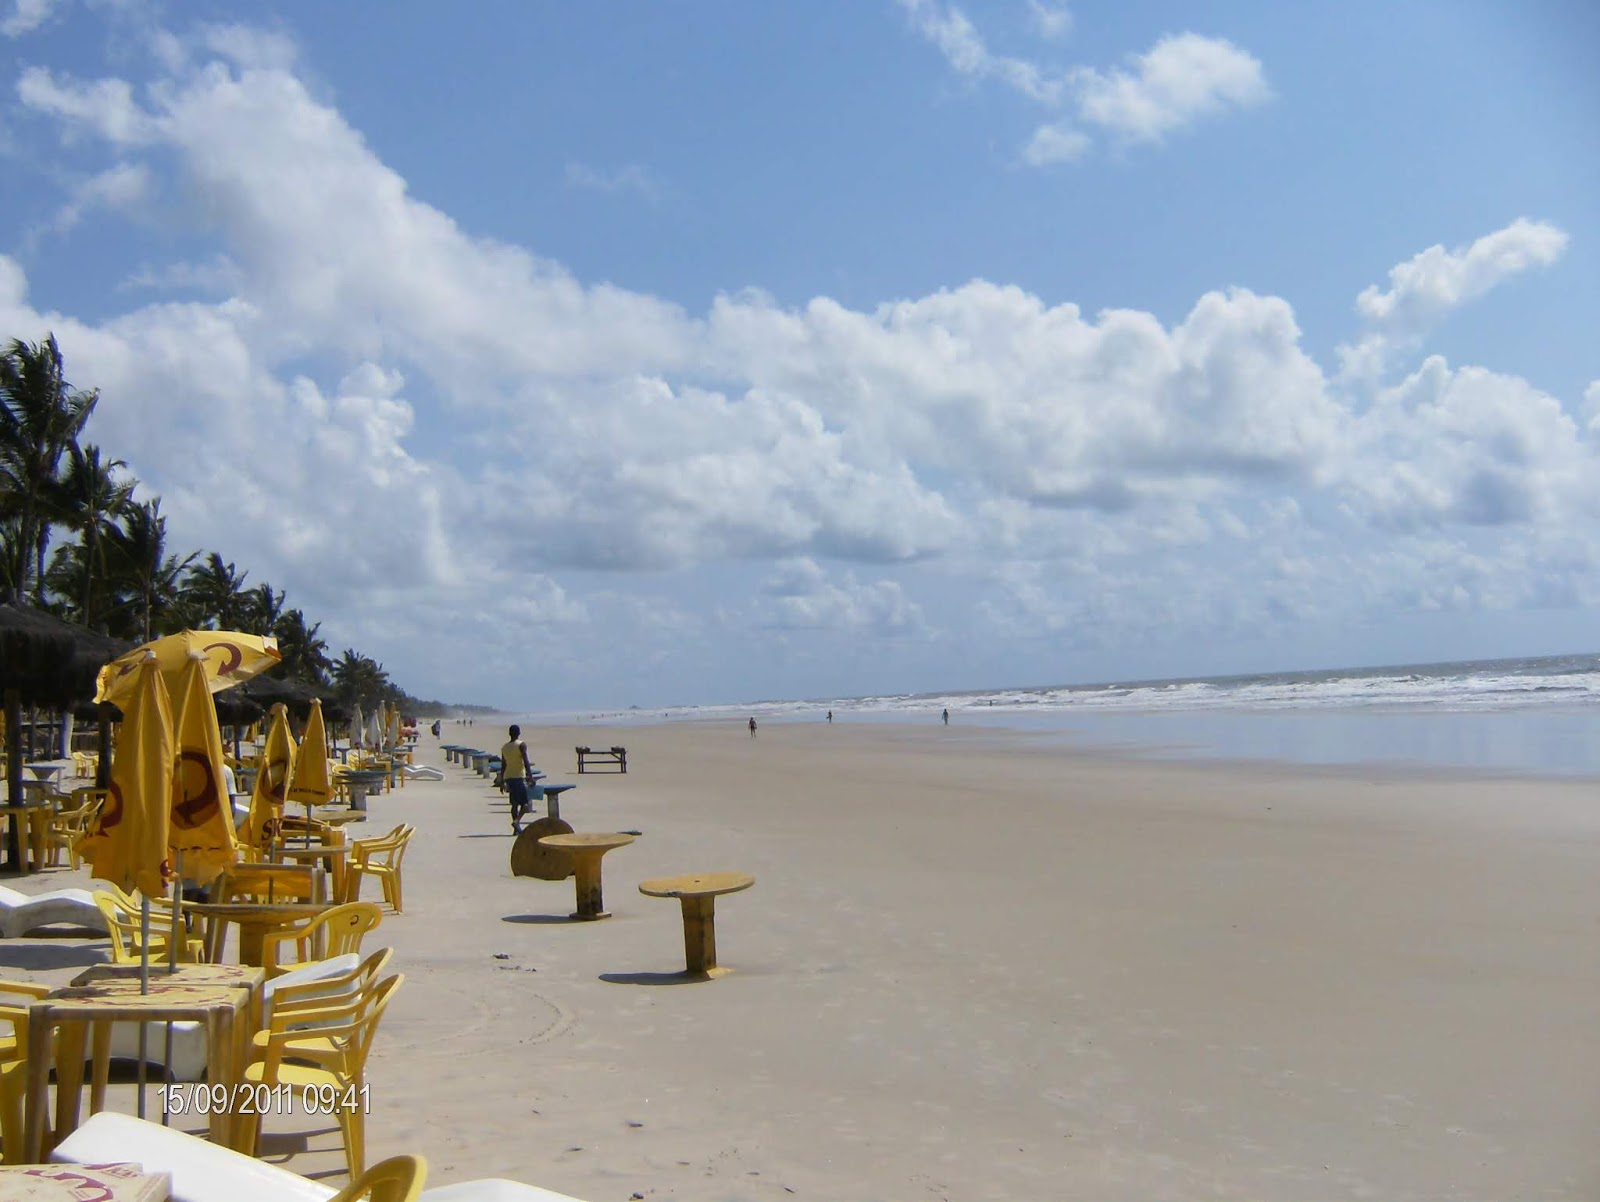 Fotografie cu Praia do Sul zonele de facilități